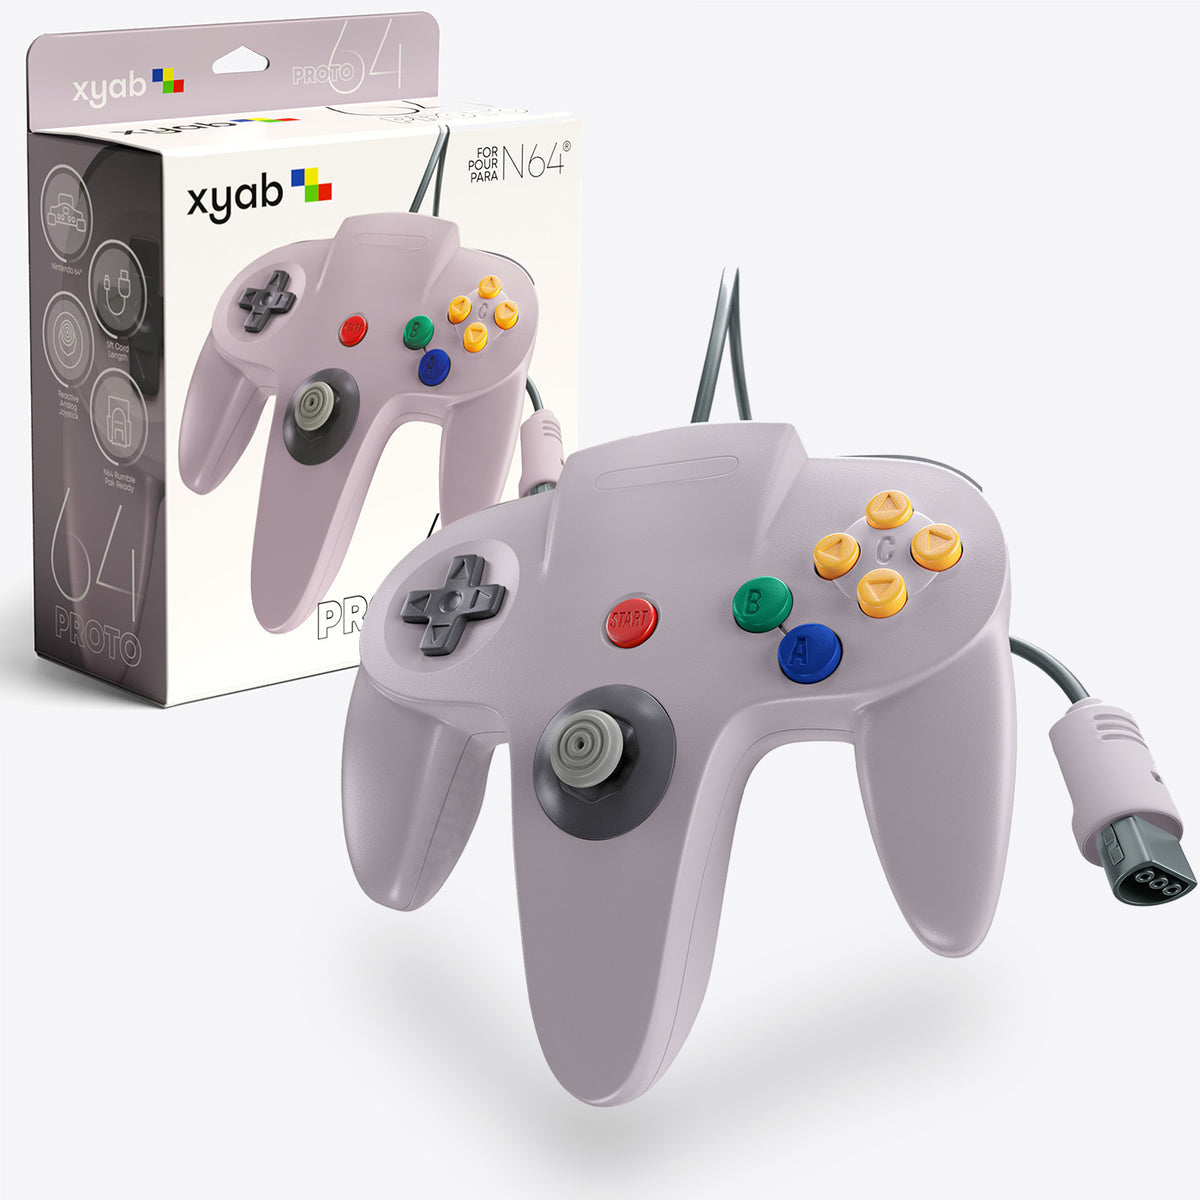 Nintendo 64 Controller - Gray